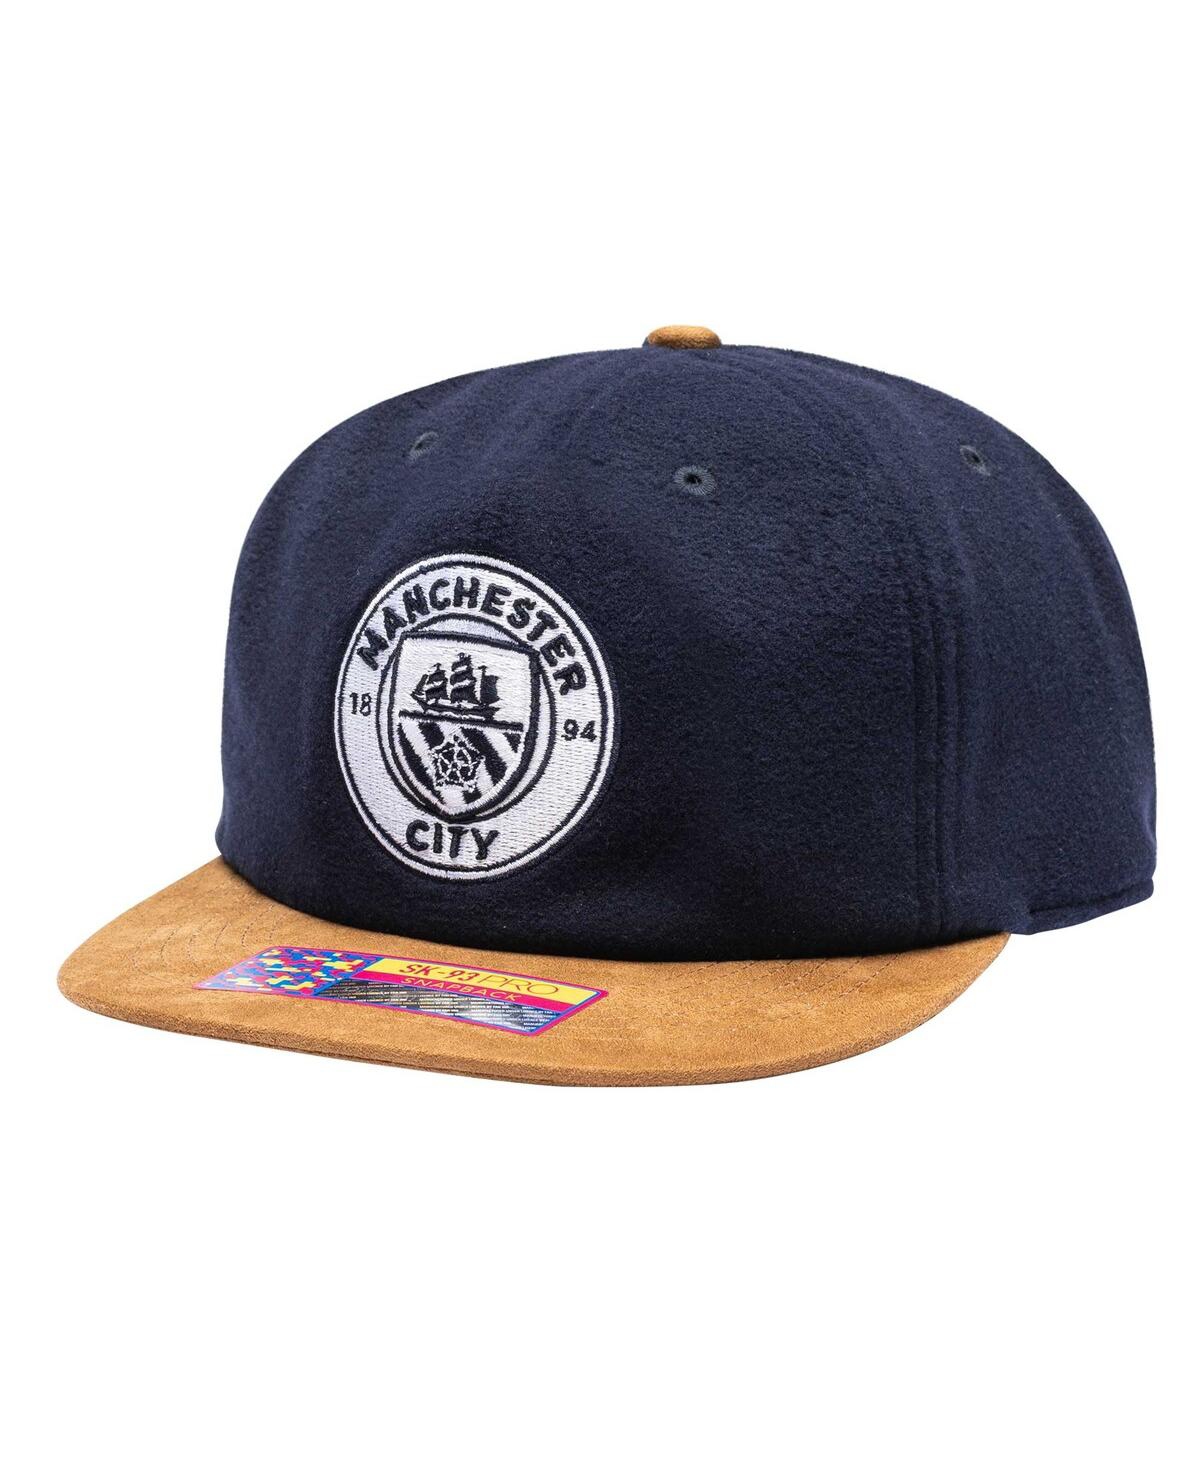 Men's Navy Manchester City Lafayette Snapback Hat - Navy